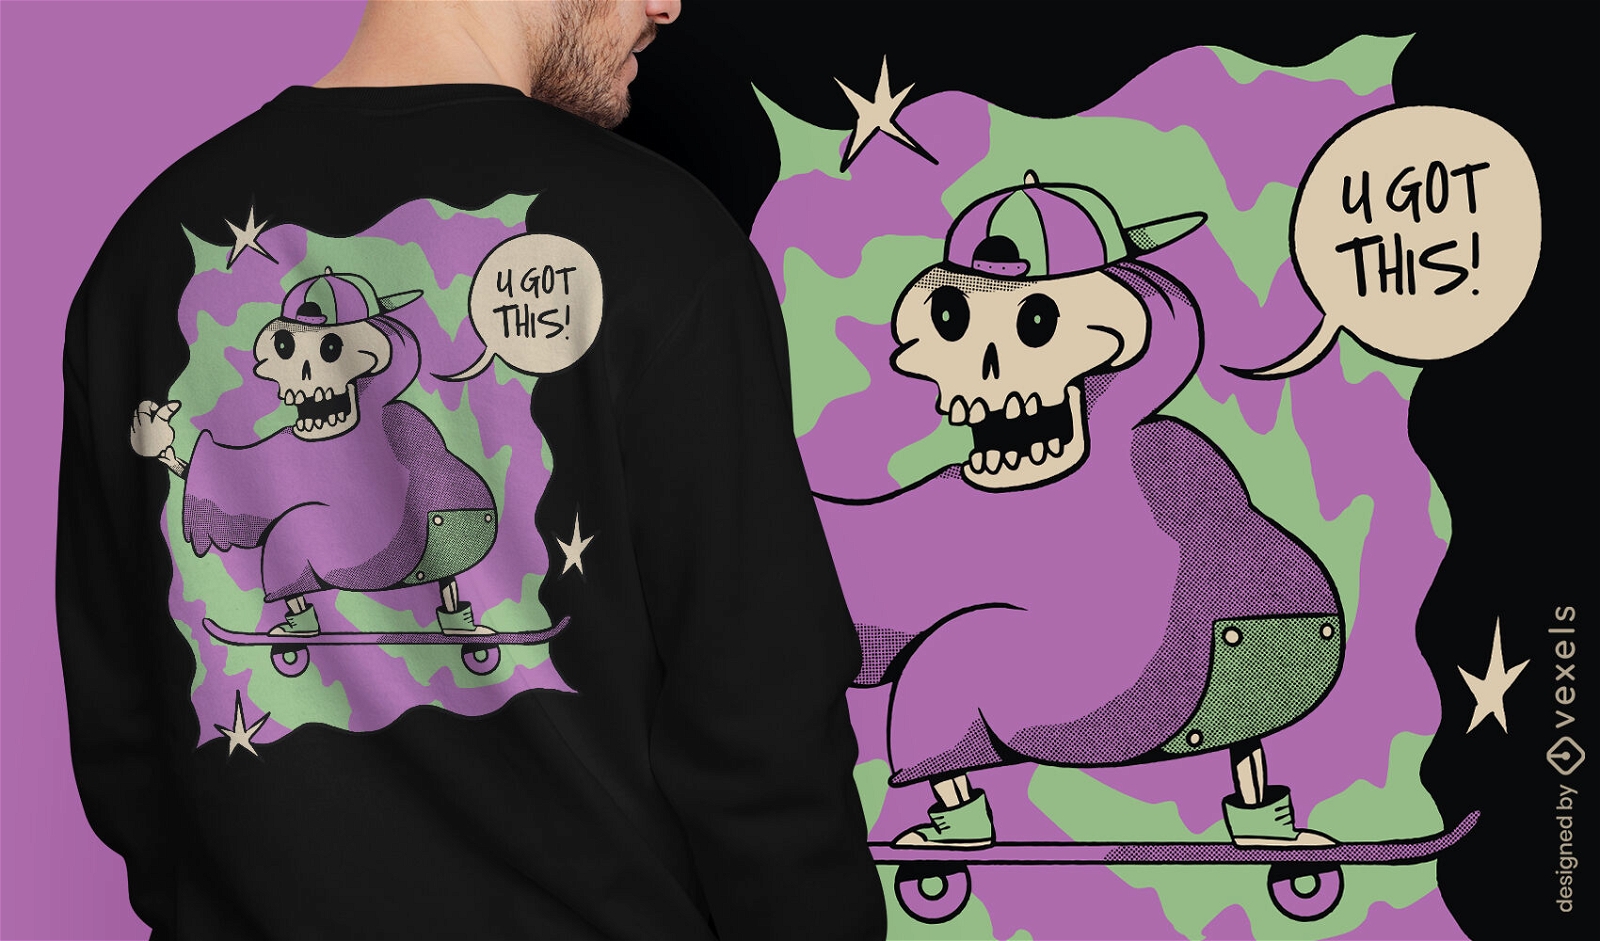 Motivational skeleton skateboarding t-shirt design